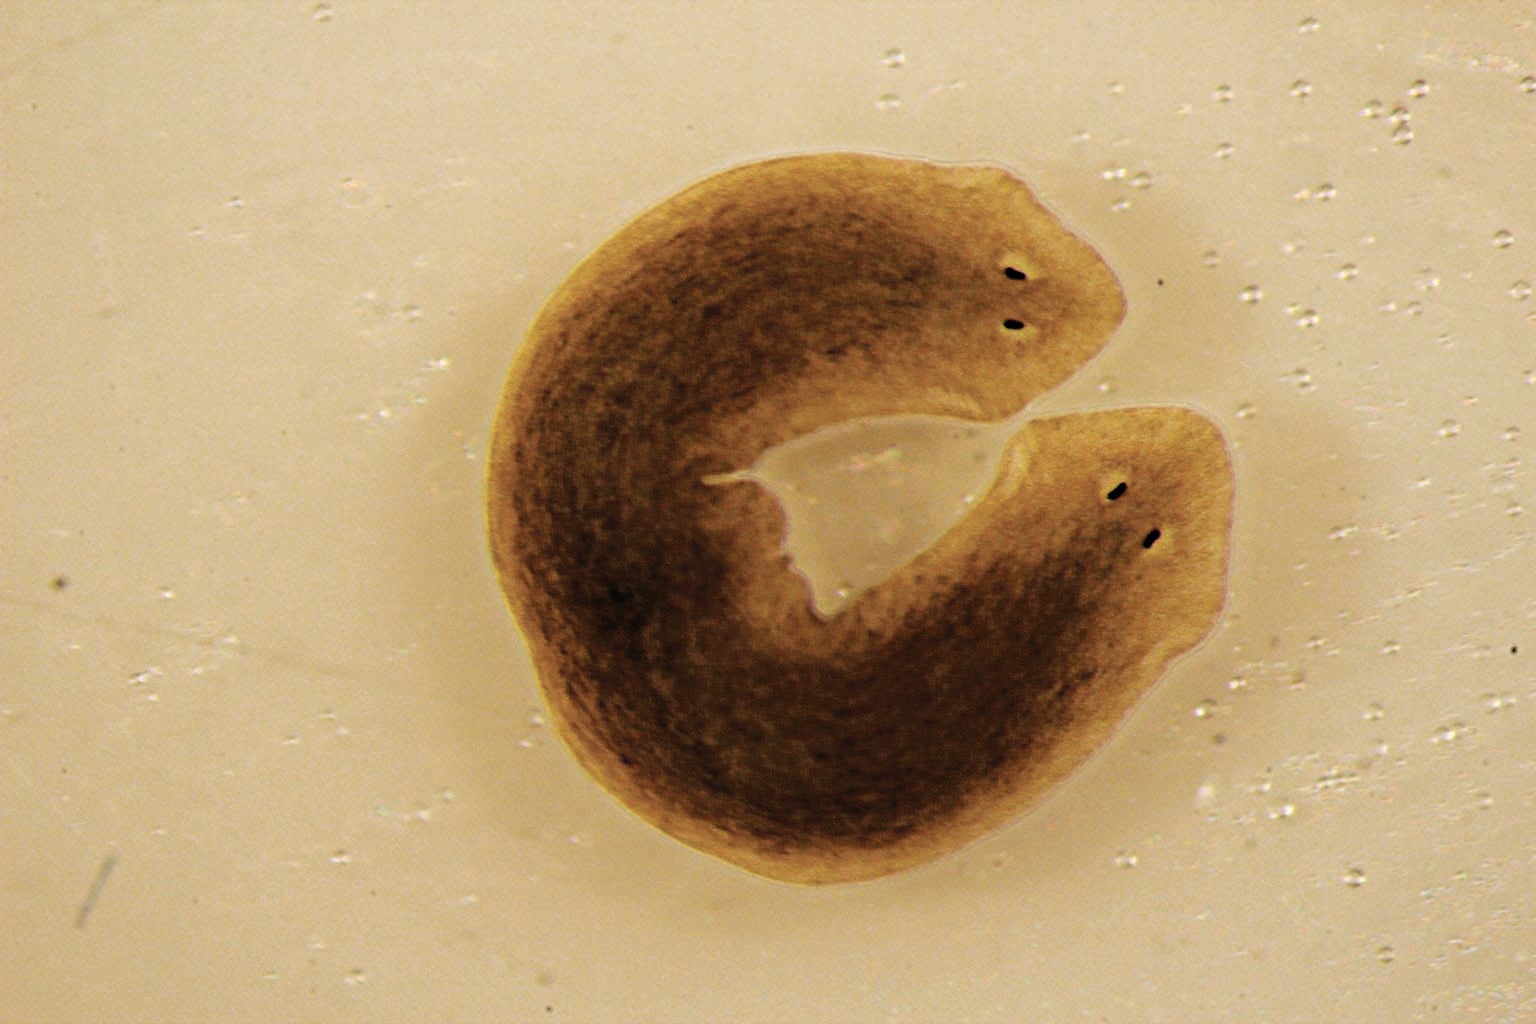 Клетки головы плоского червя Dugesia japonica имеют другое биоэлектрическое напряжение, чем клетки хвоста. Поменяйте напряжения местами и отрежьте хвост, и голова регенерирует вторую голову.